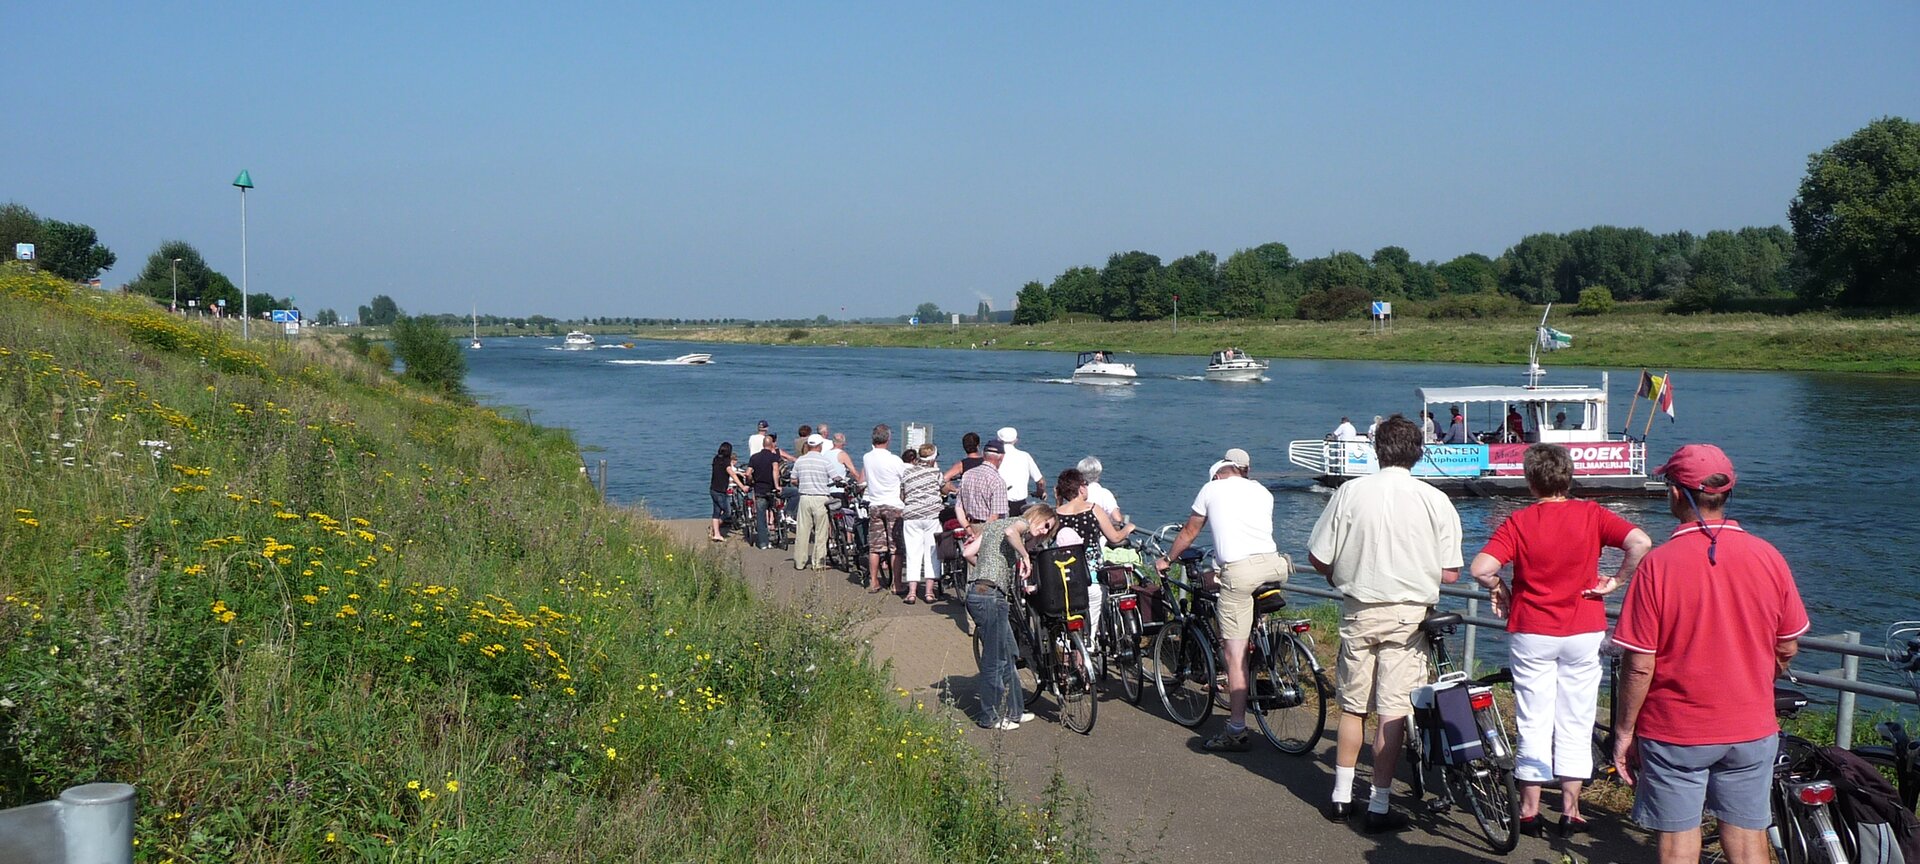 Voet- en fietsveer Ophoven - President Willy Claes - fietsers wachtend op pontje